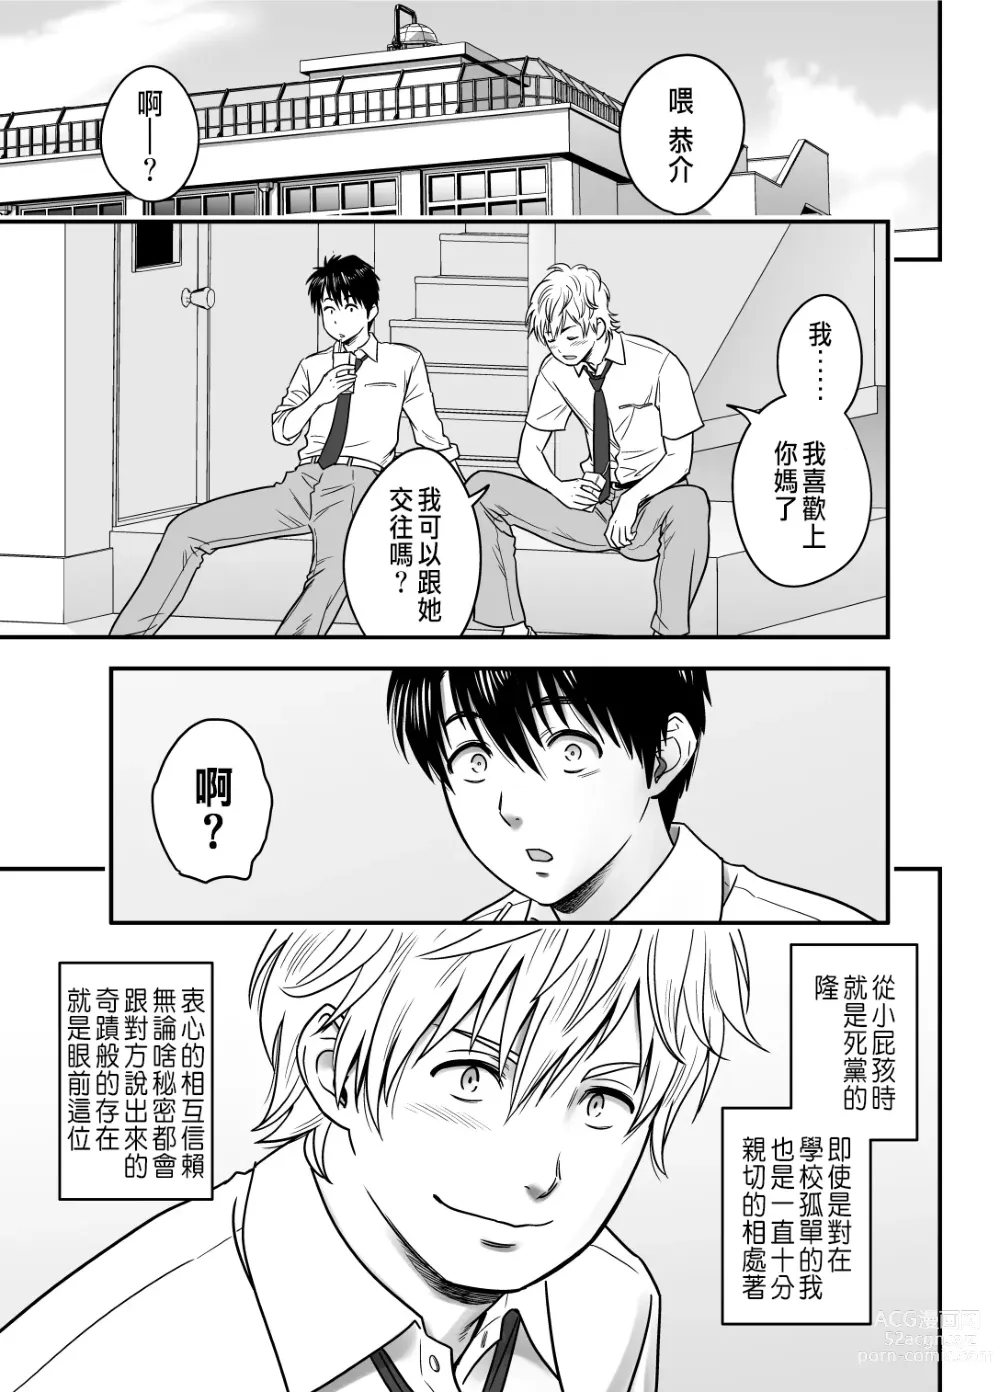 Page 3 of manga 母が友カノになったので1~3